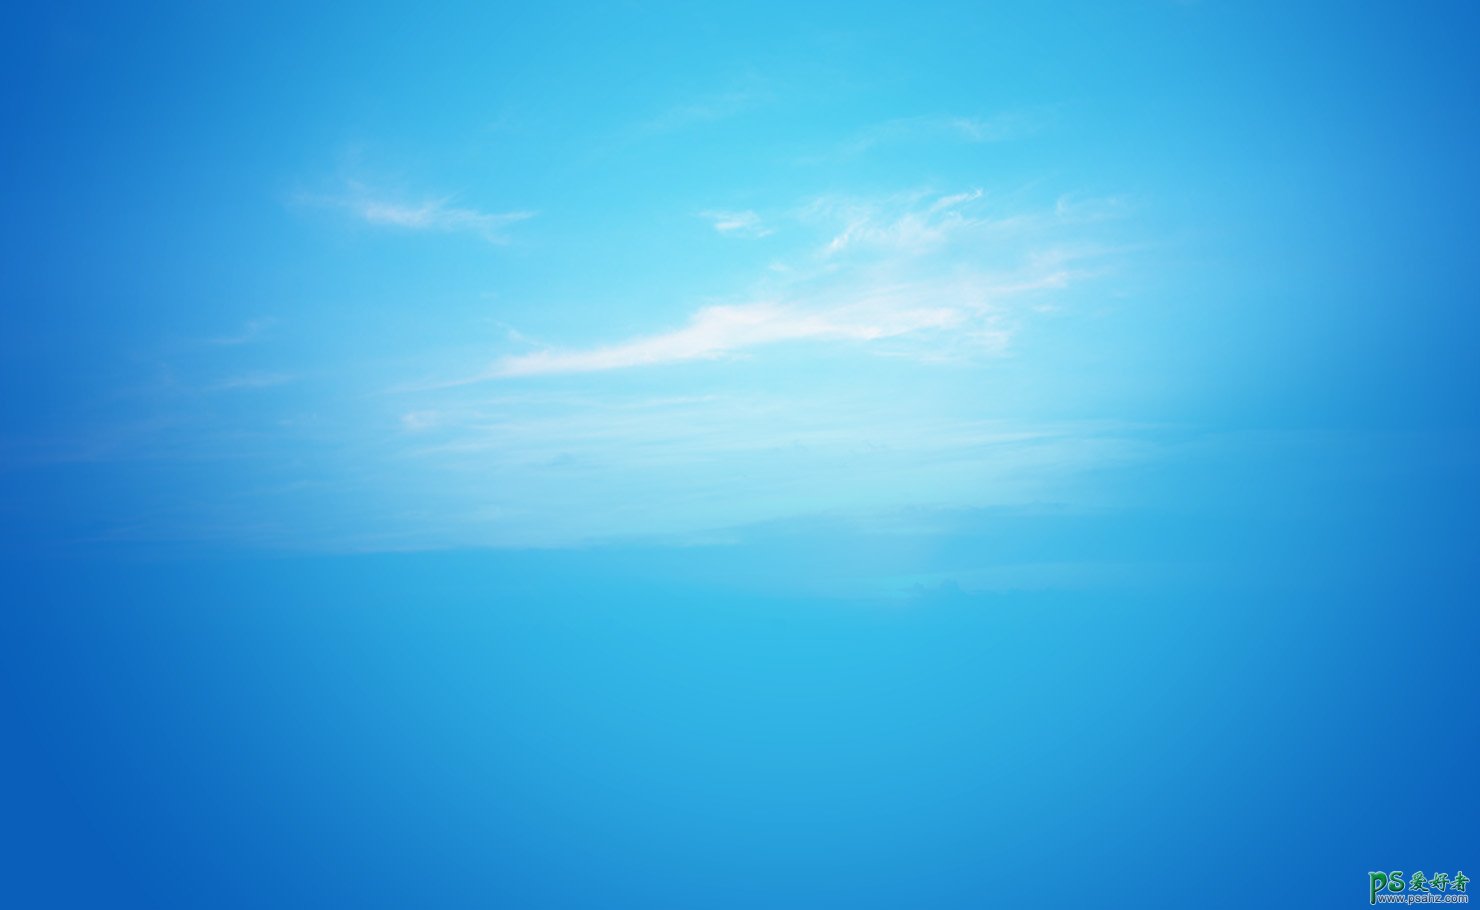 Photoshop合成漂浮的海岛场景图，海洋场景溶图，海洋海岛立体图